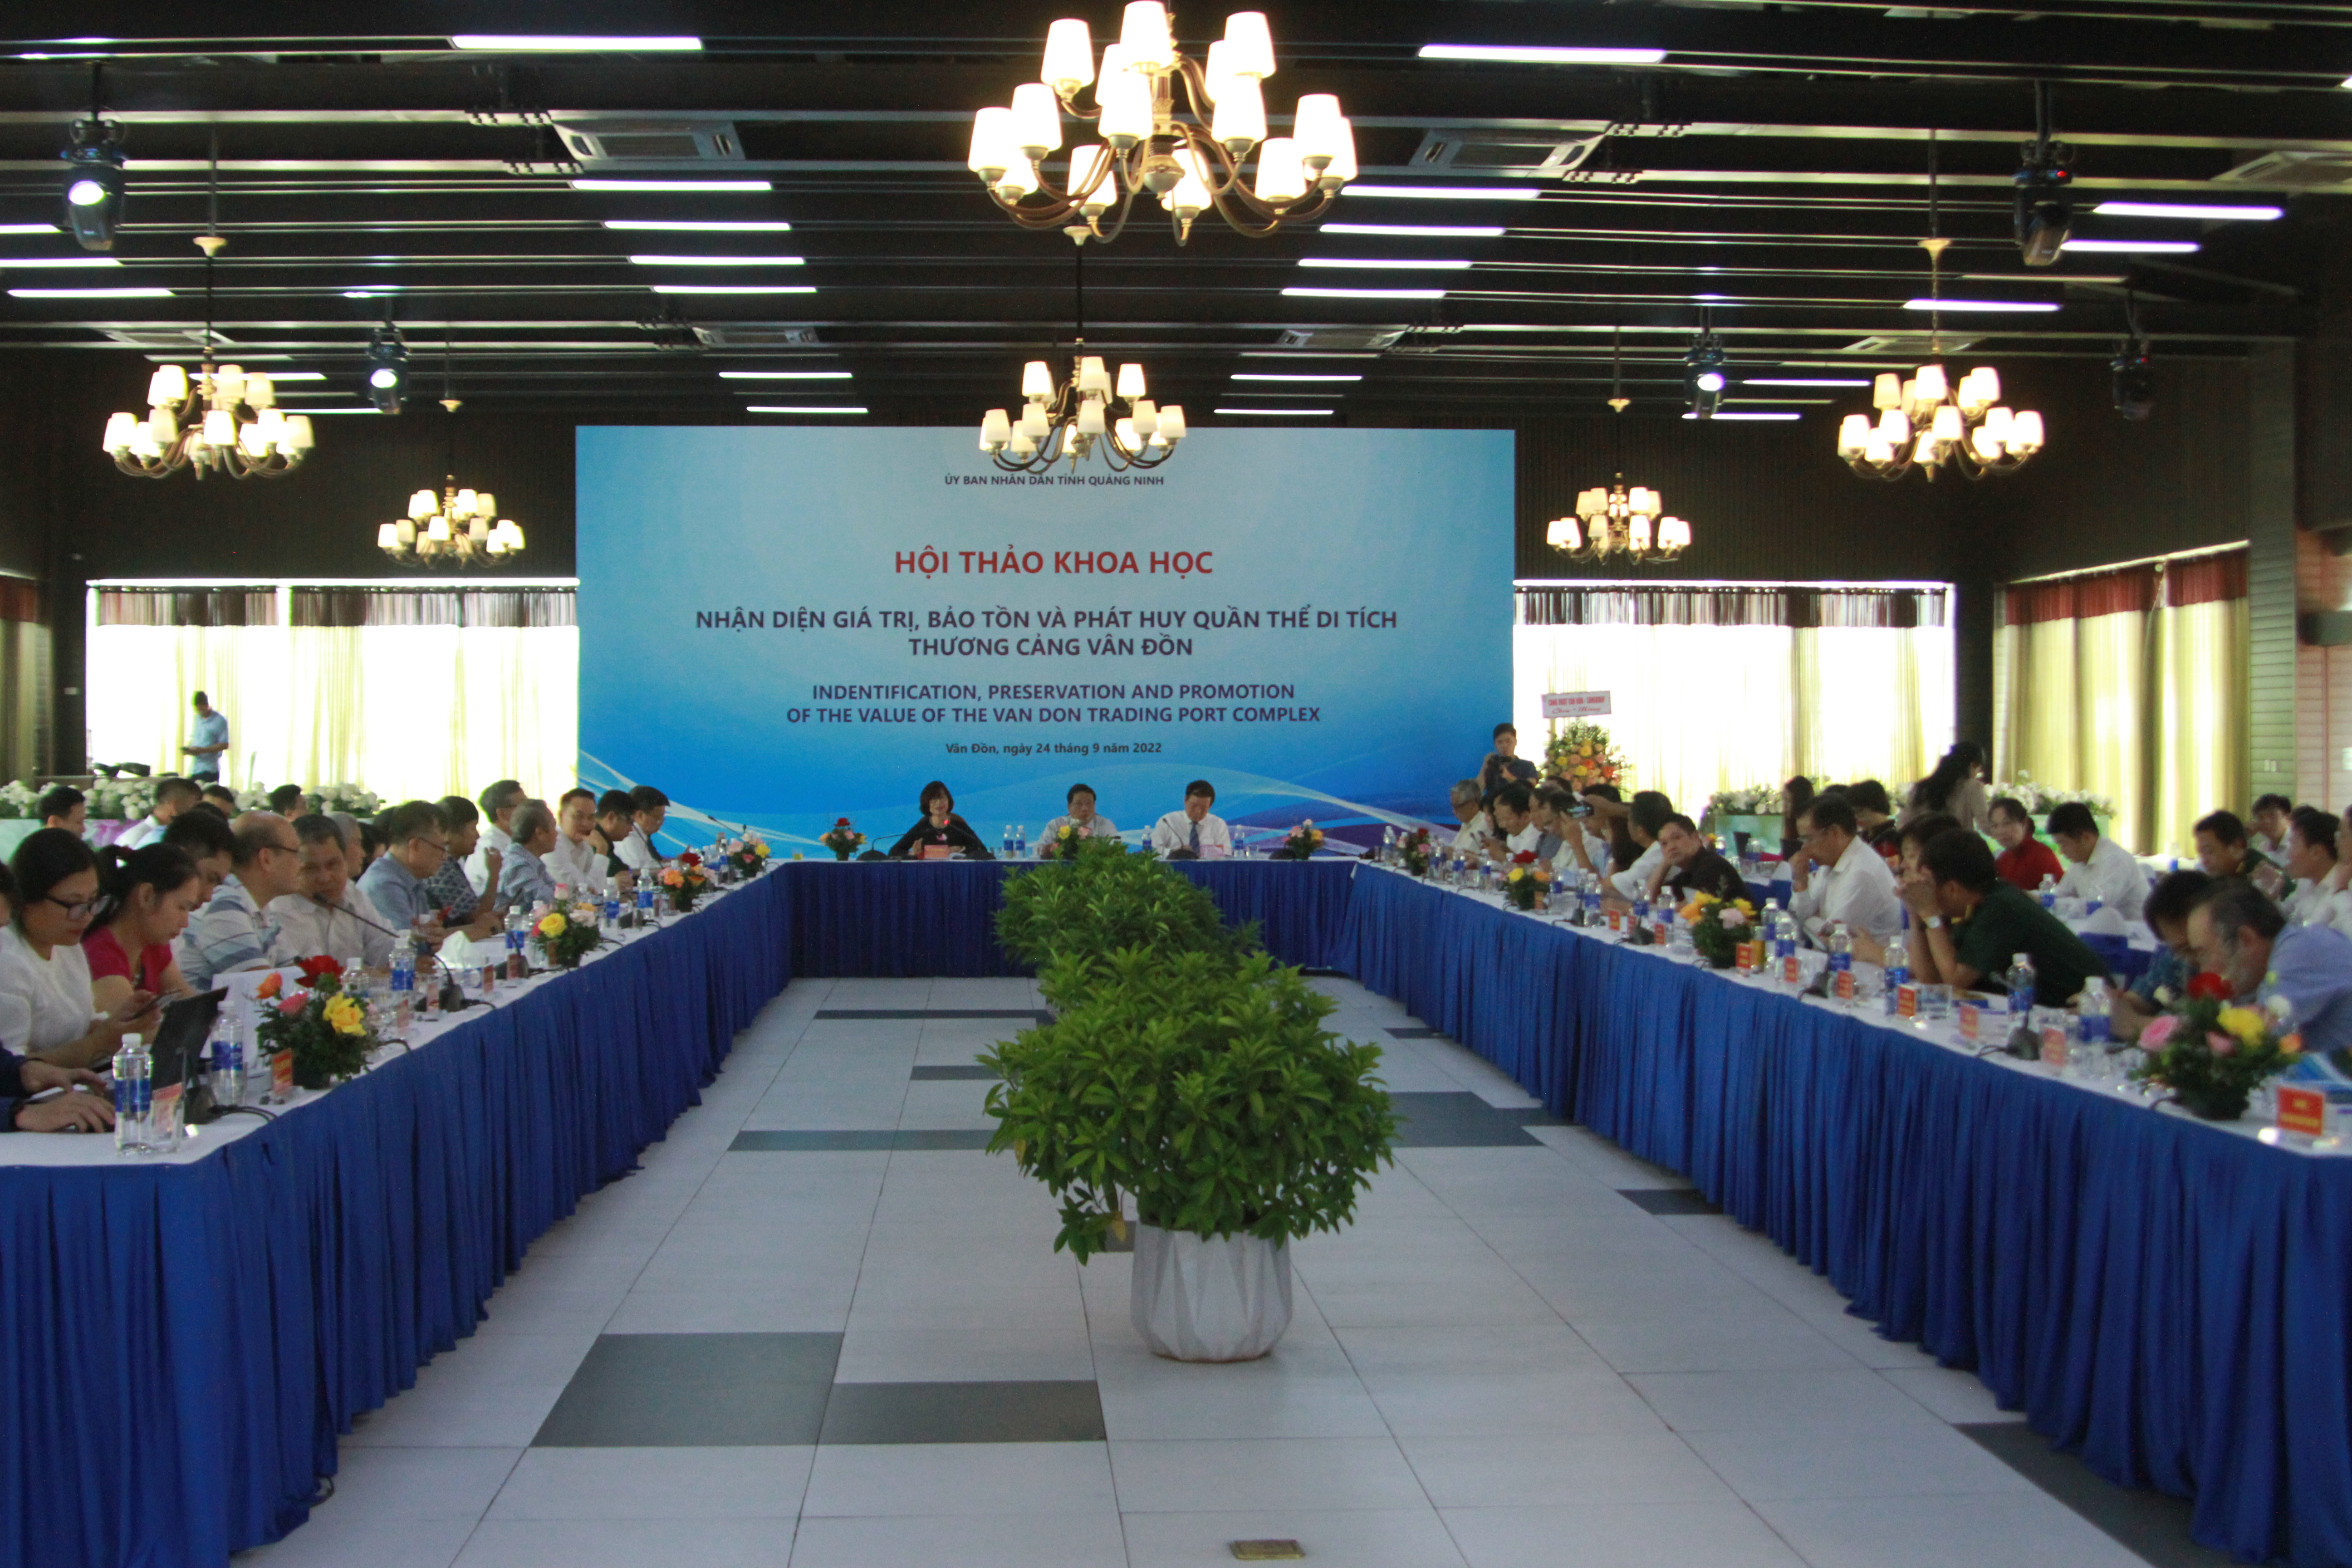 Hội thảo đã nhận được nhiều ý kiến tâm huyết về bảo tồn và phát huy giá trị thương cảng Vân Đồn.